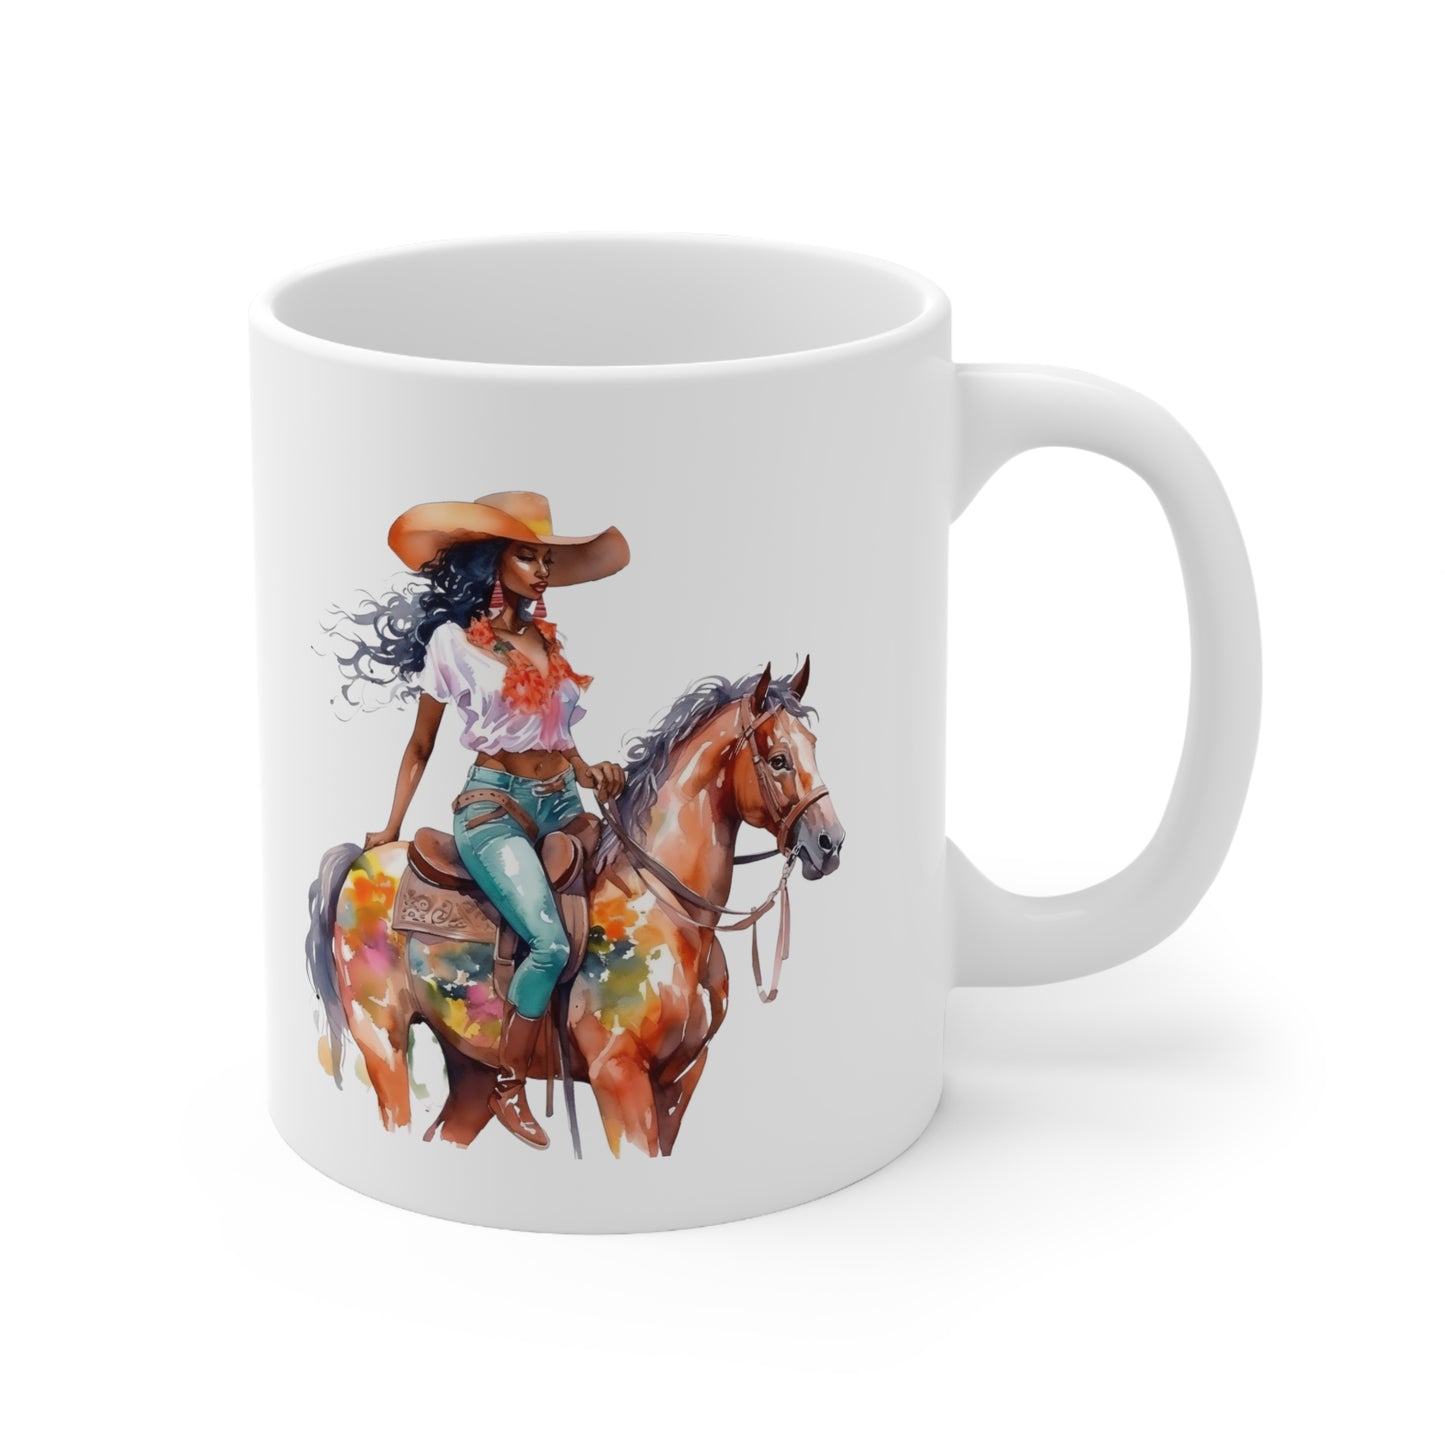 Black Cowgirl Ceramic Mug 11oz